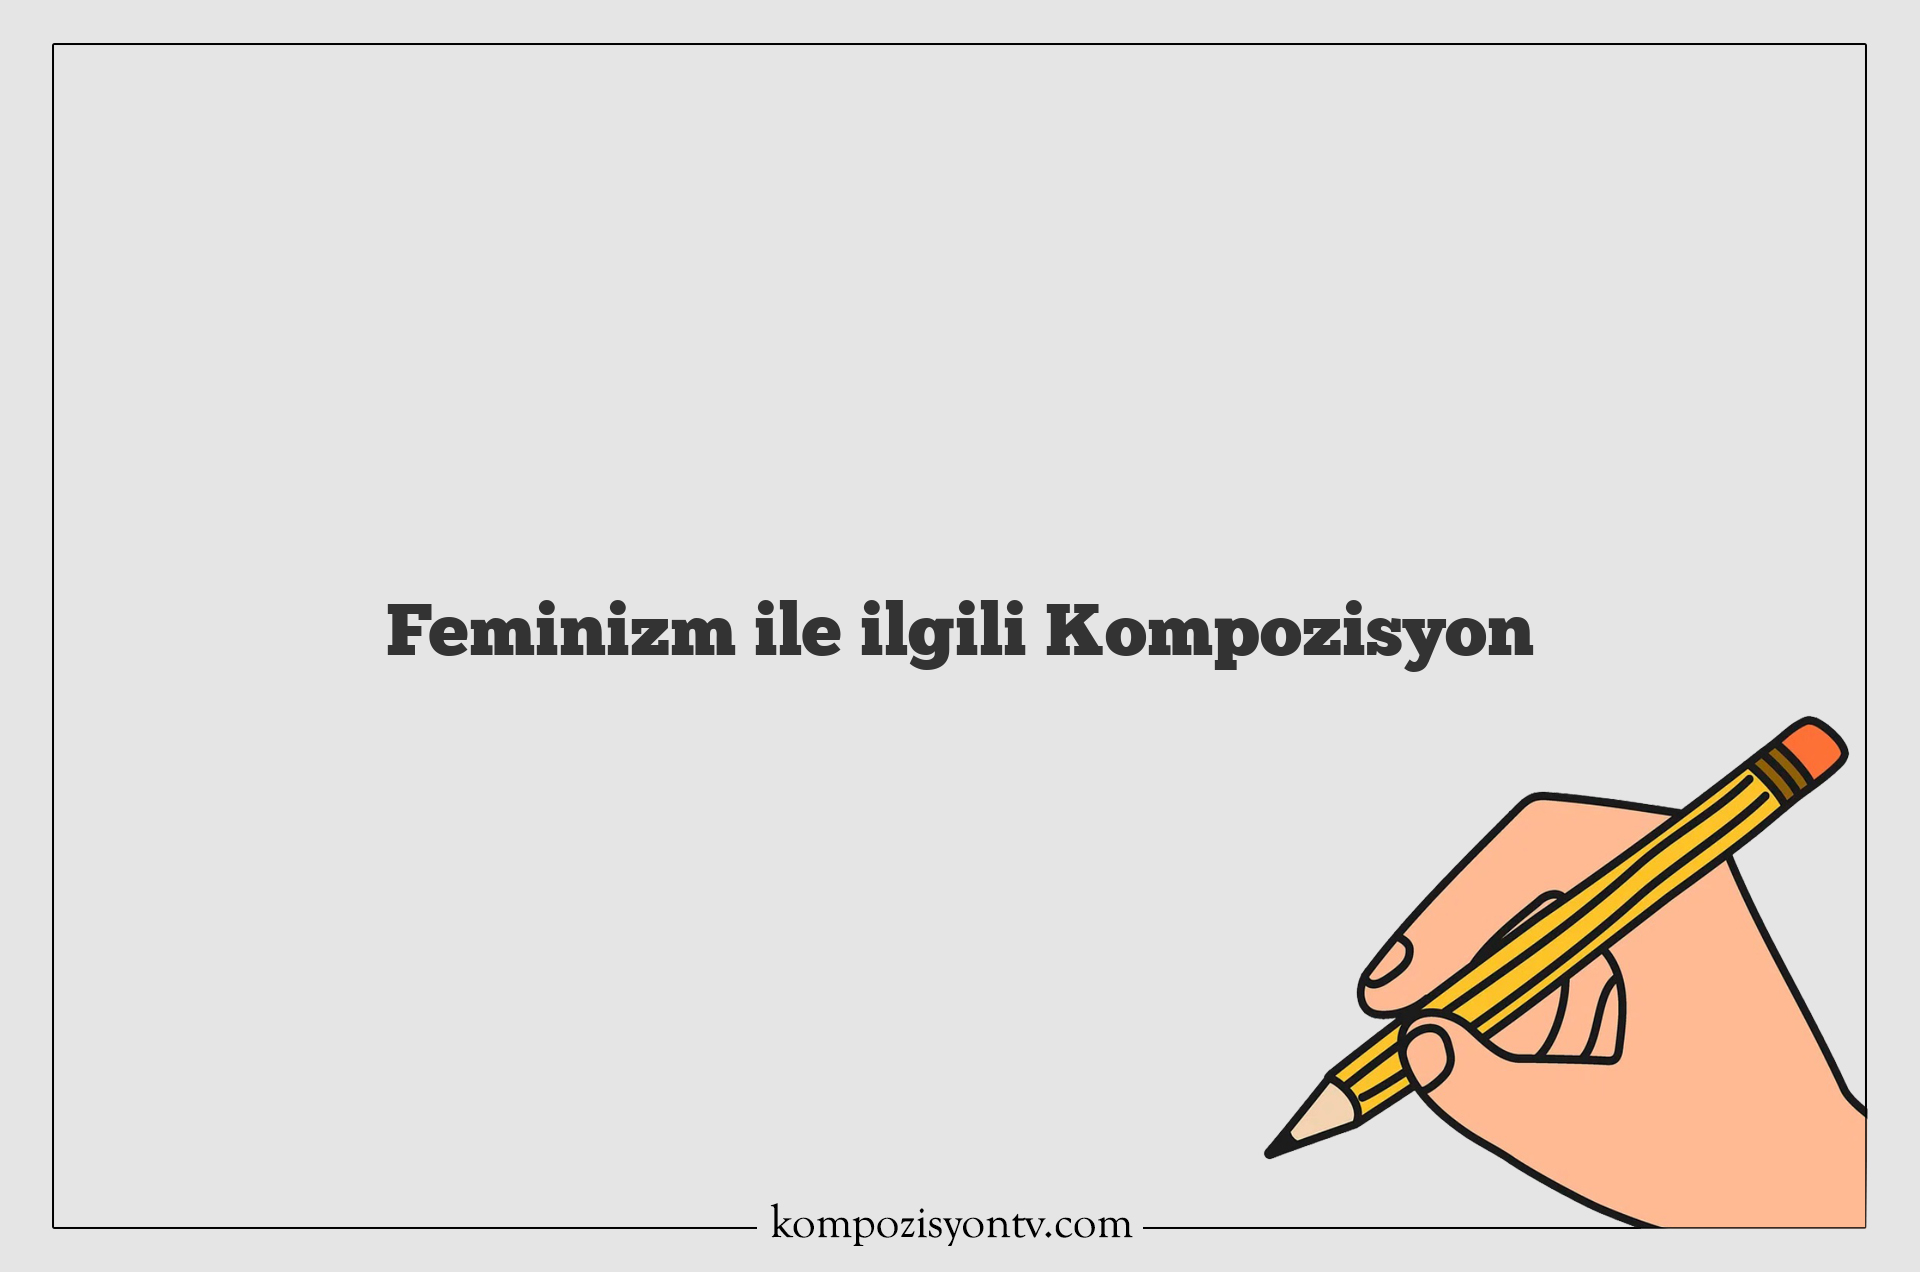 Feminizm ile ilgili Kompozisyon